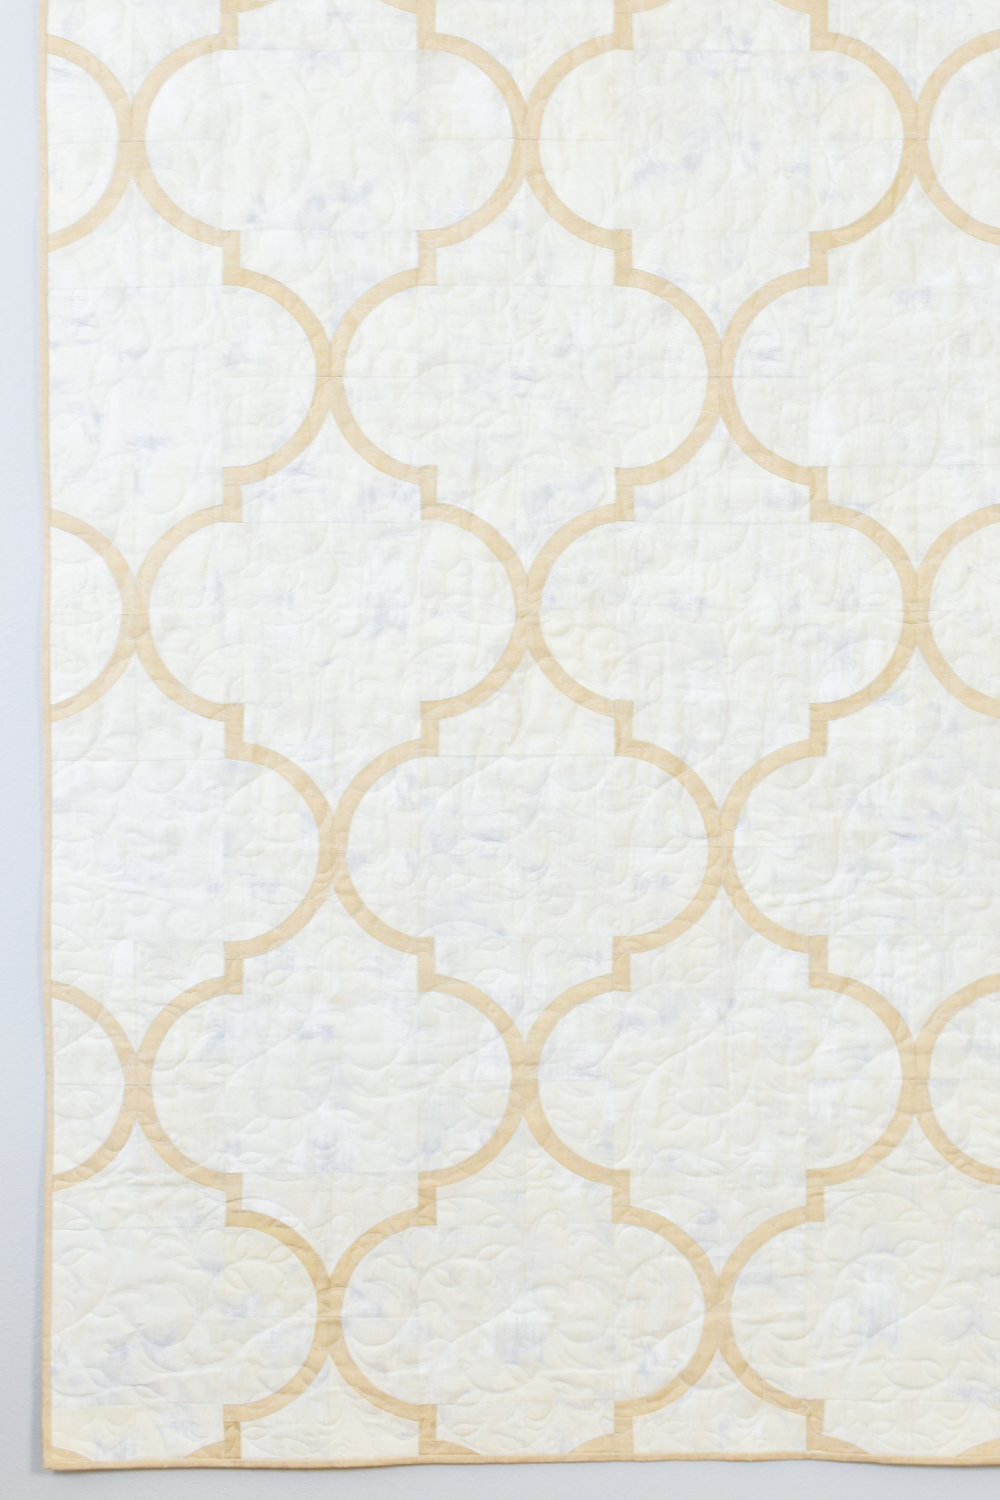 Valerie\'s Tiles Quilt Pattern